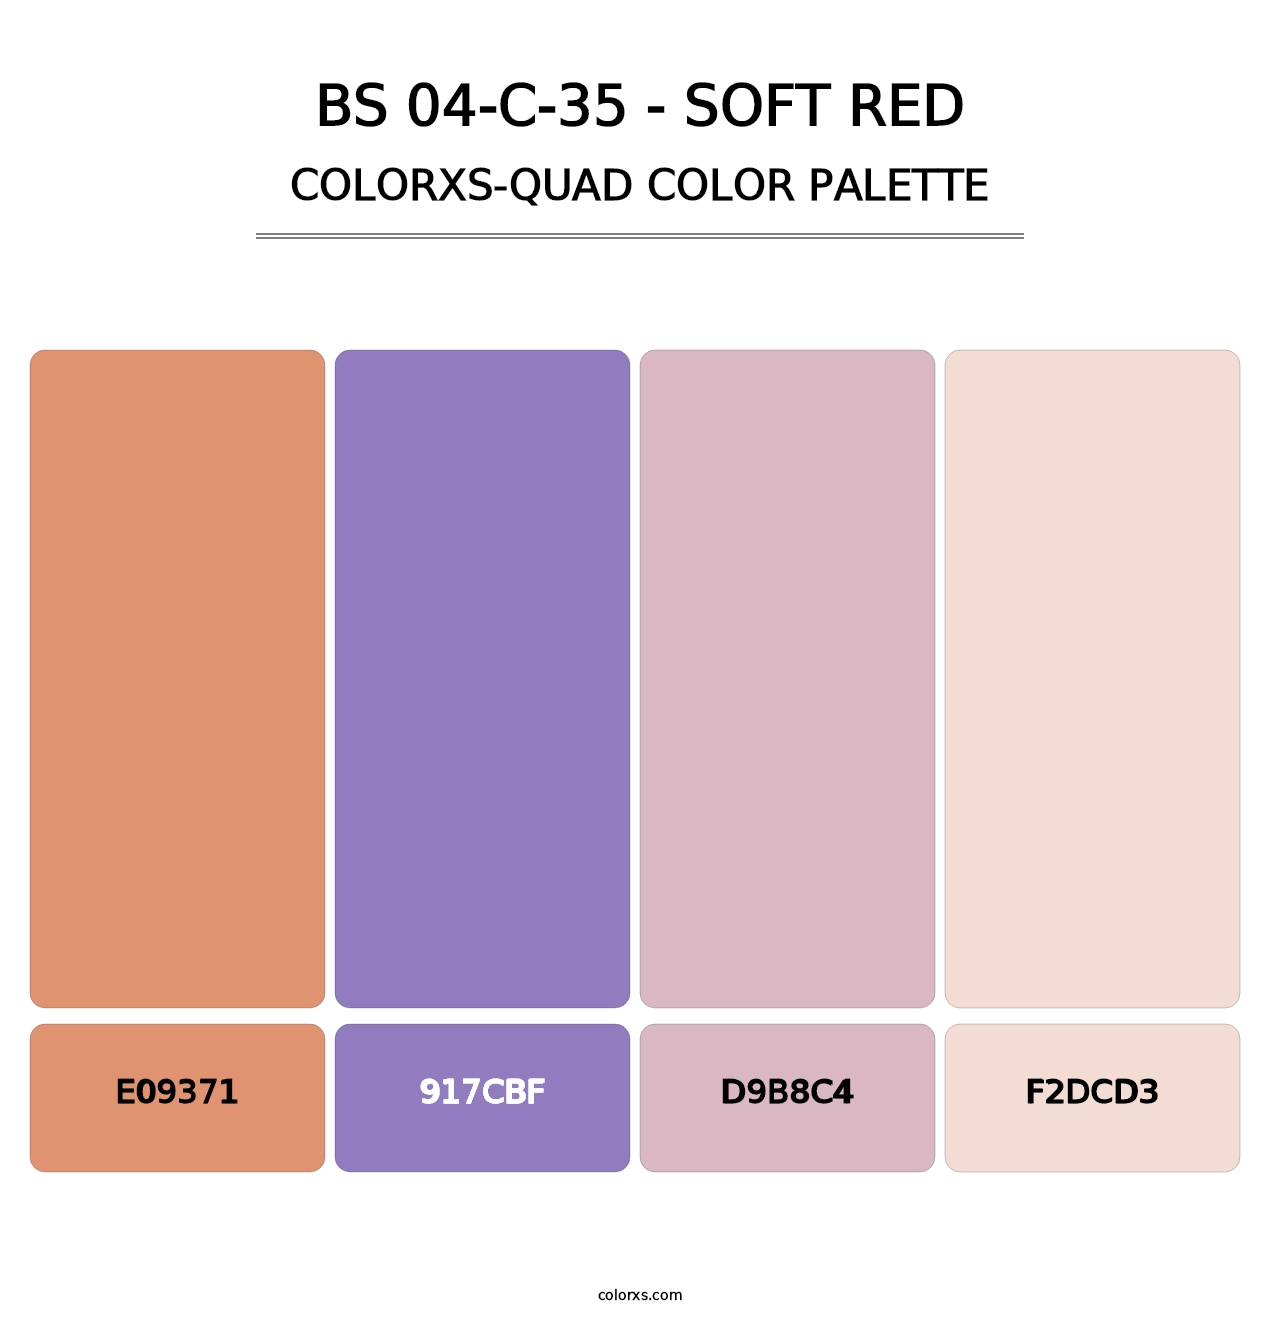 BS 04-C-35 - Soft Red - Colorxs Quad Palette